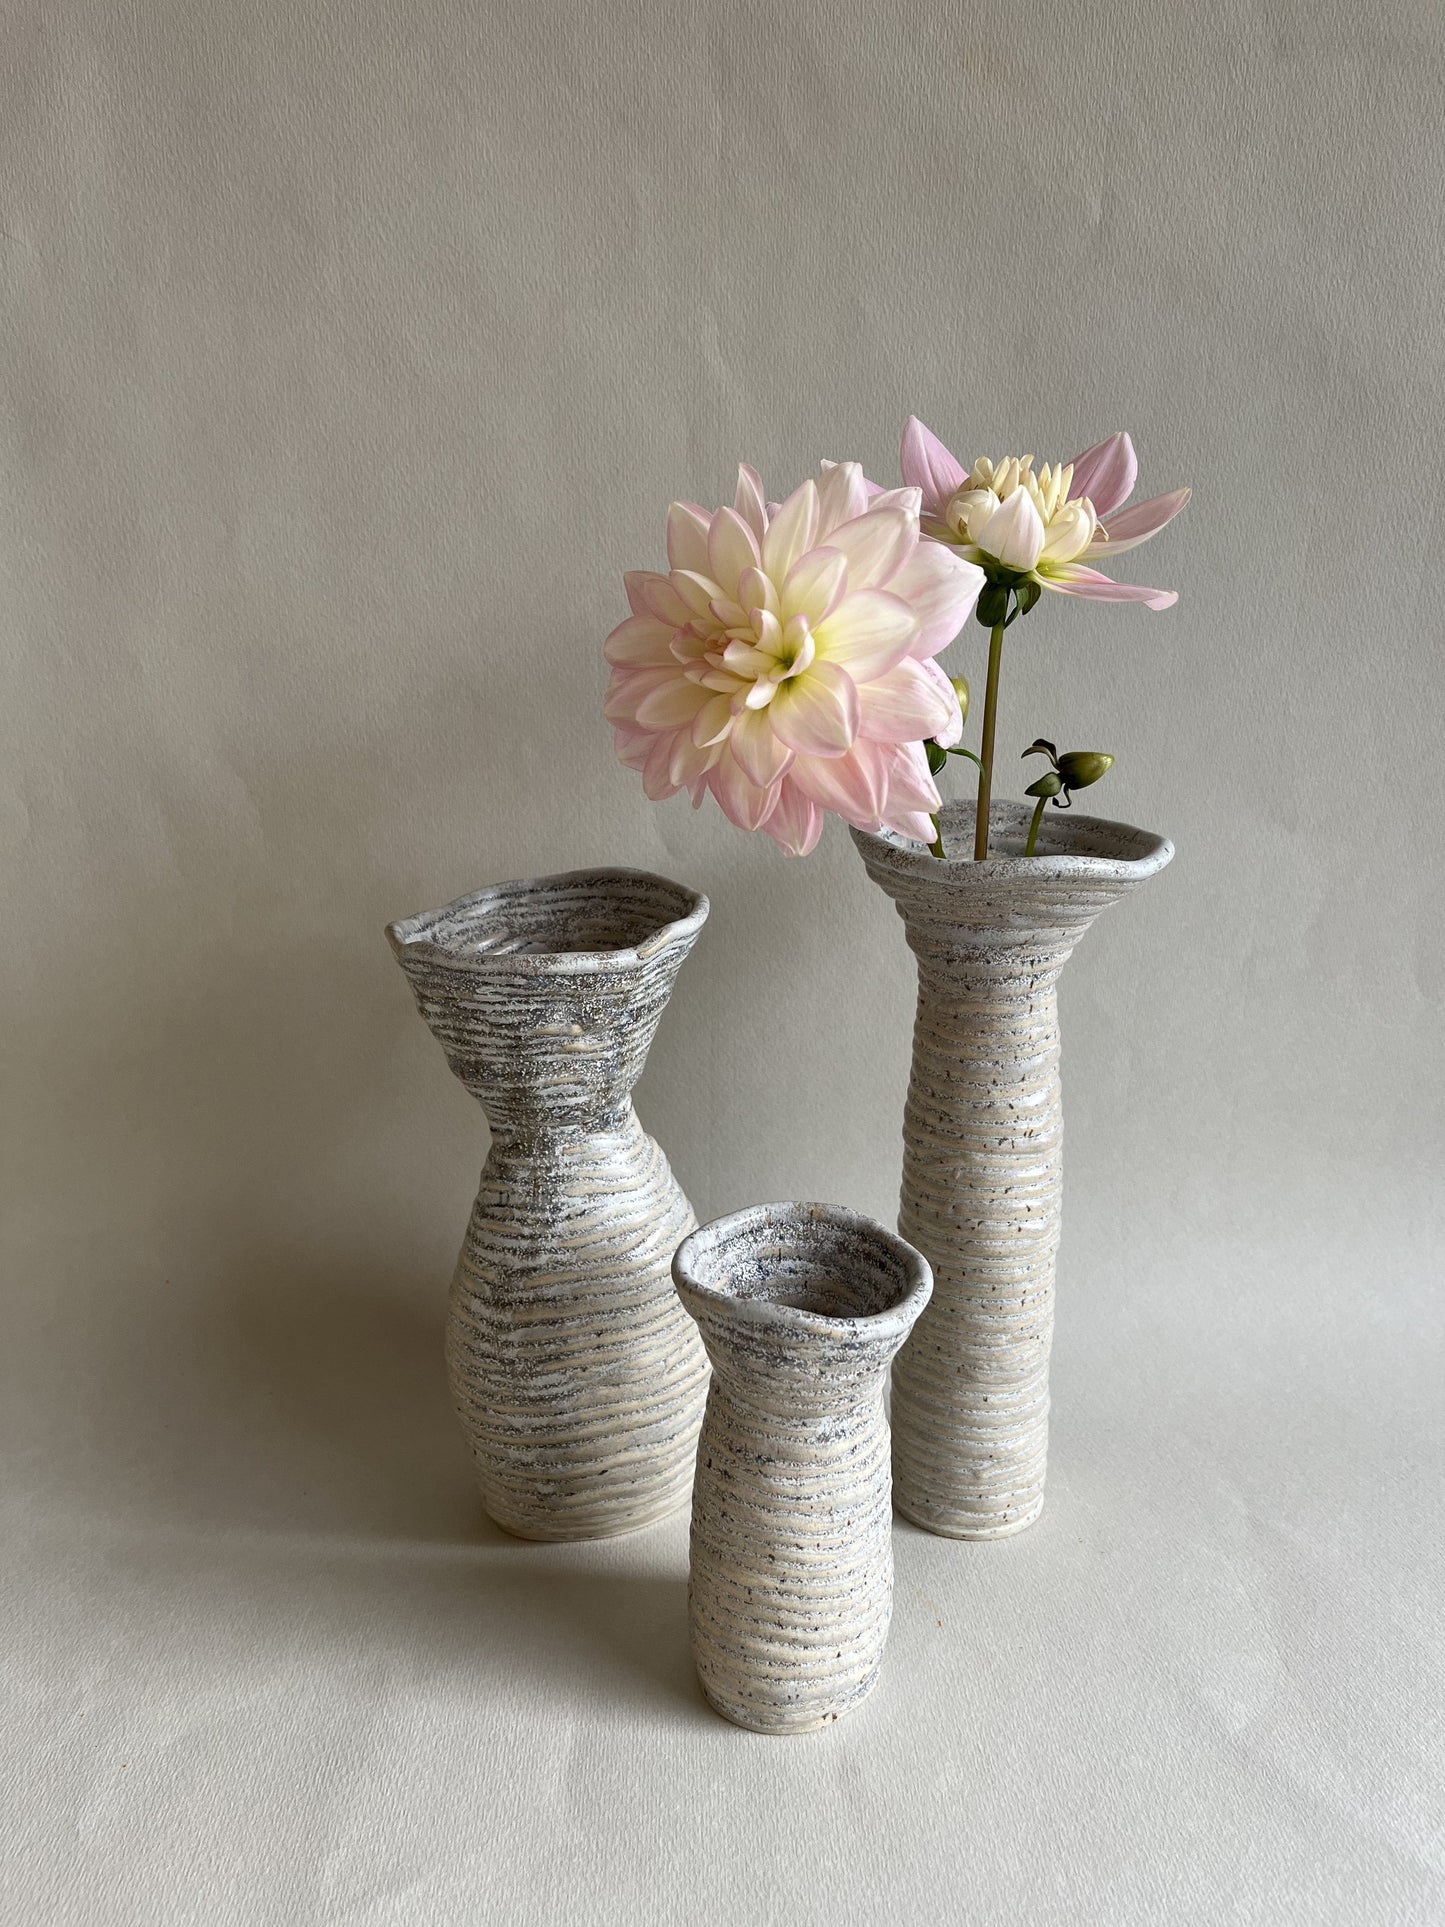 Curled Vase '02